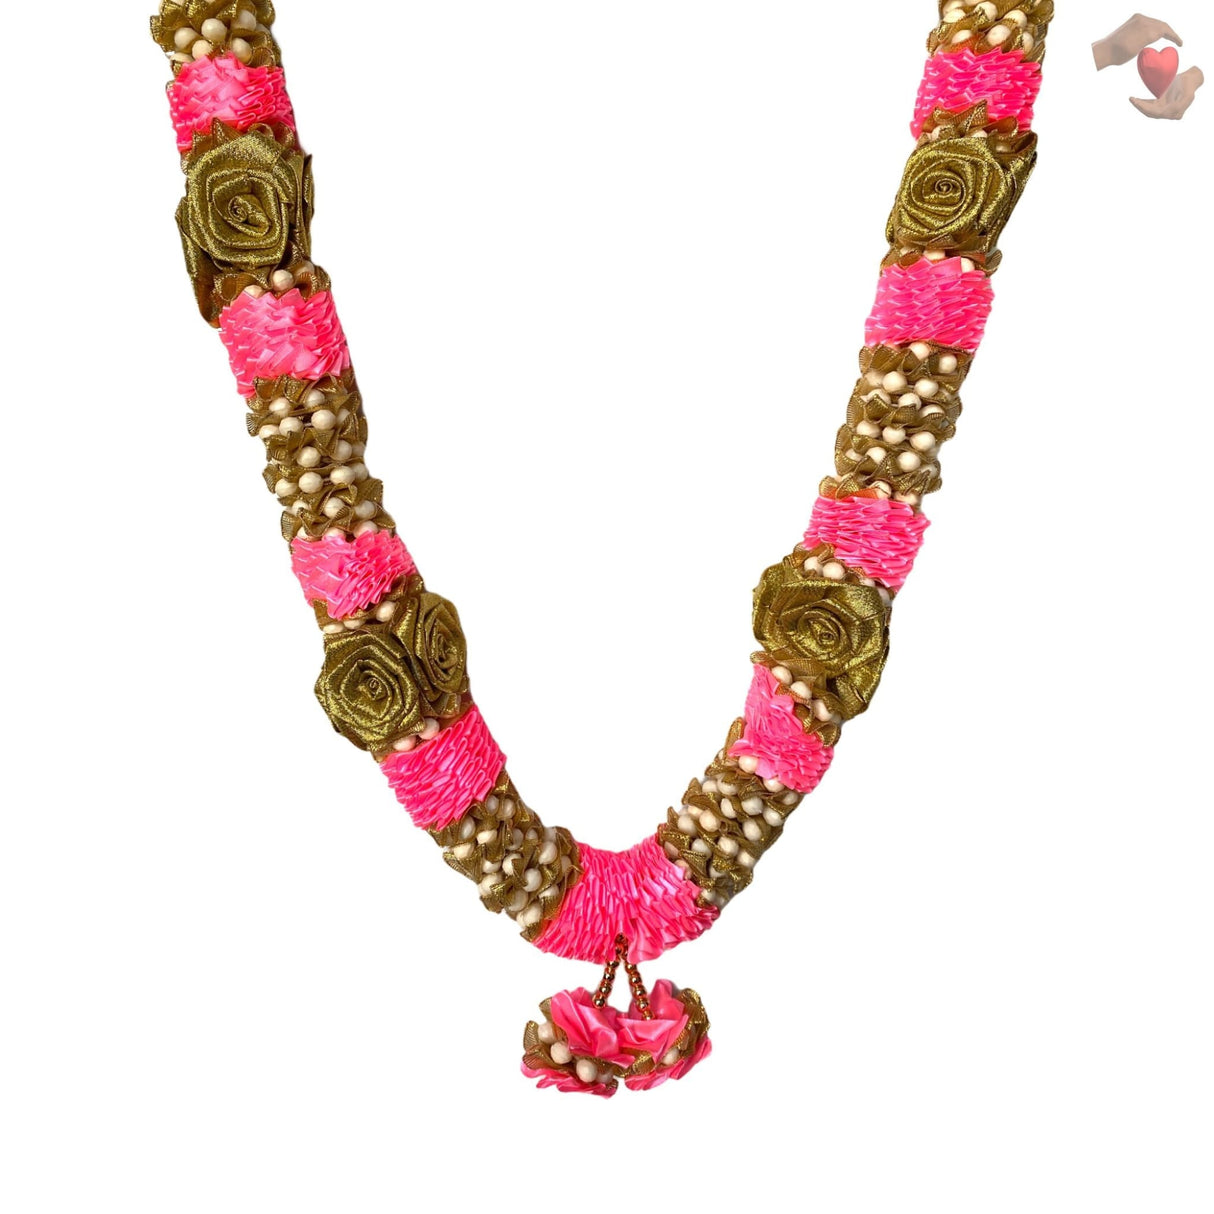 Pack of 2 varmala wedding garland pink gold rose indian